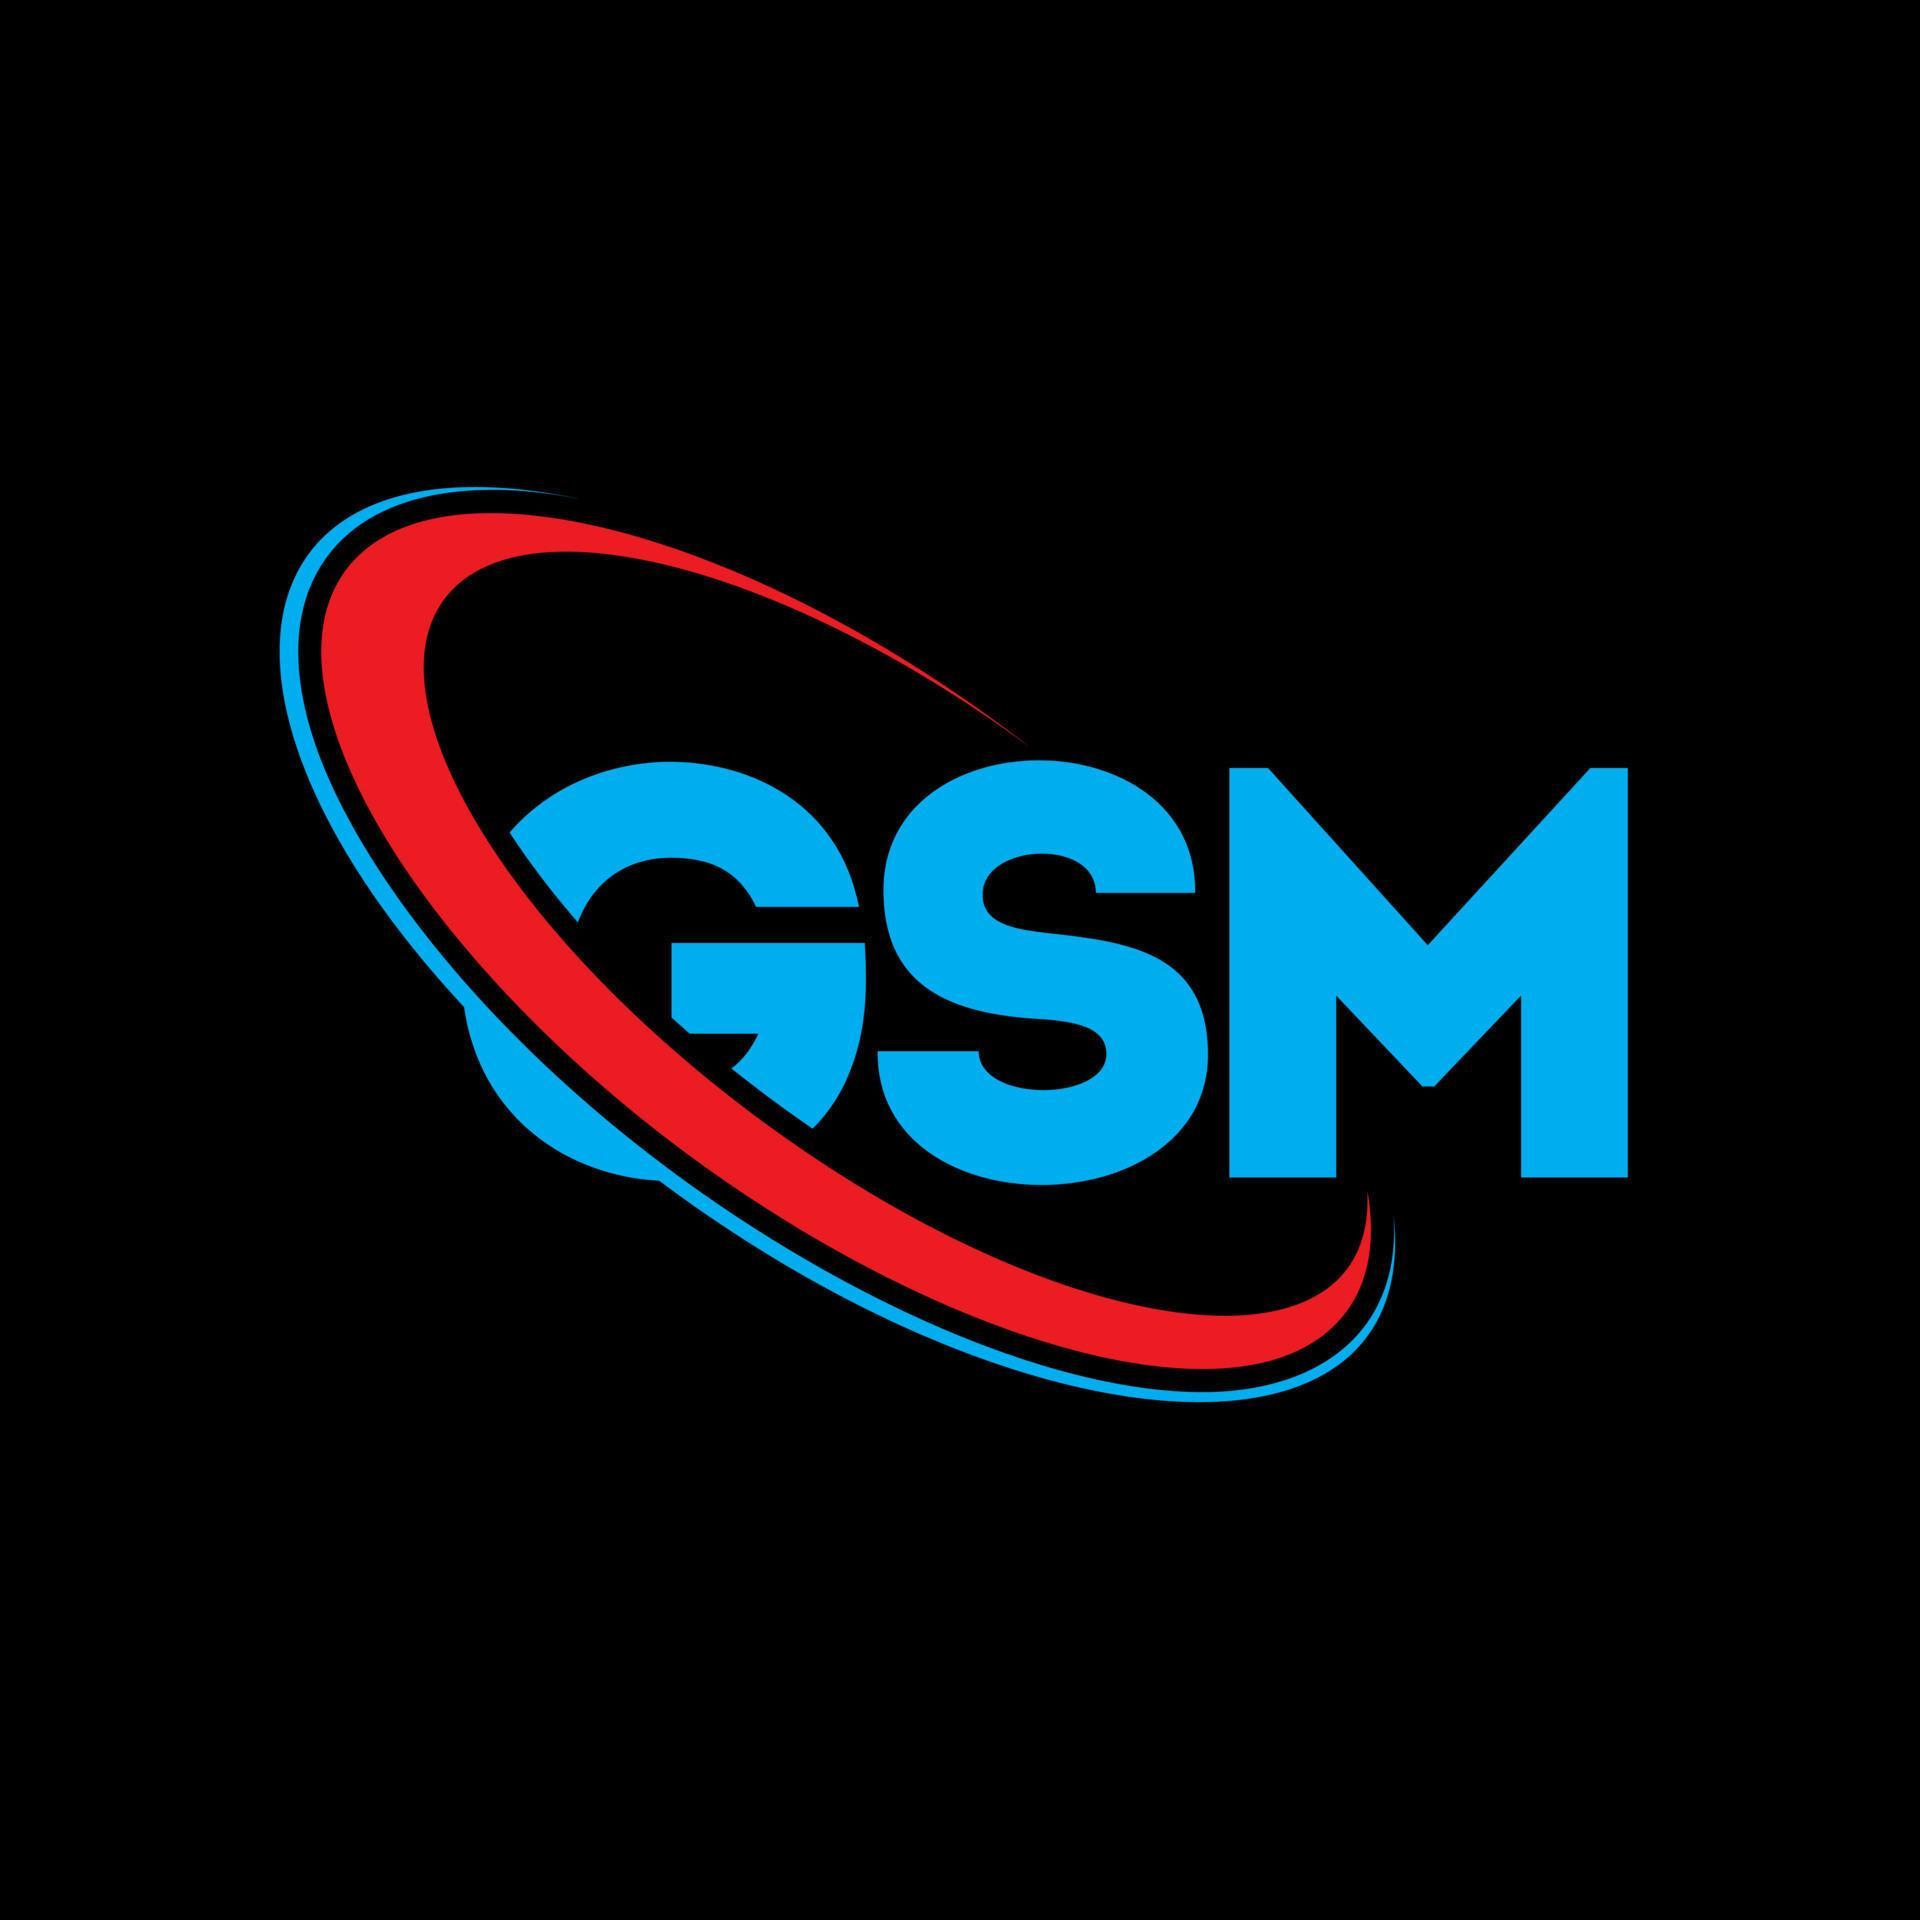 РСВ логотип. USM logo. GSM logo. Neva GSM logo. Unlooktool net